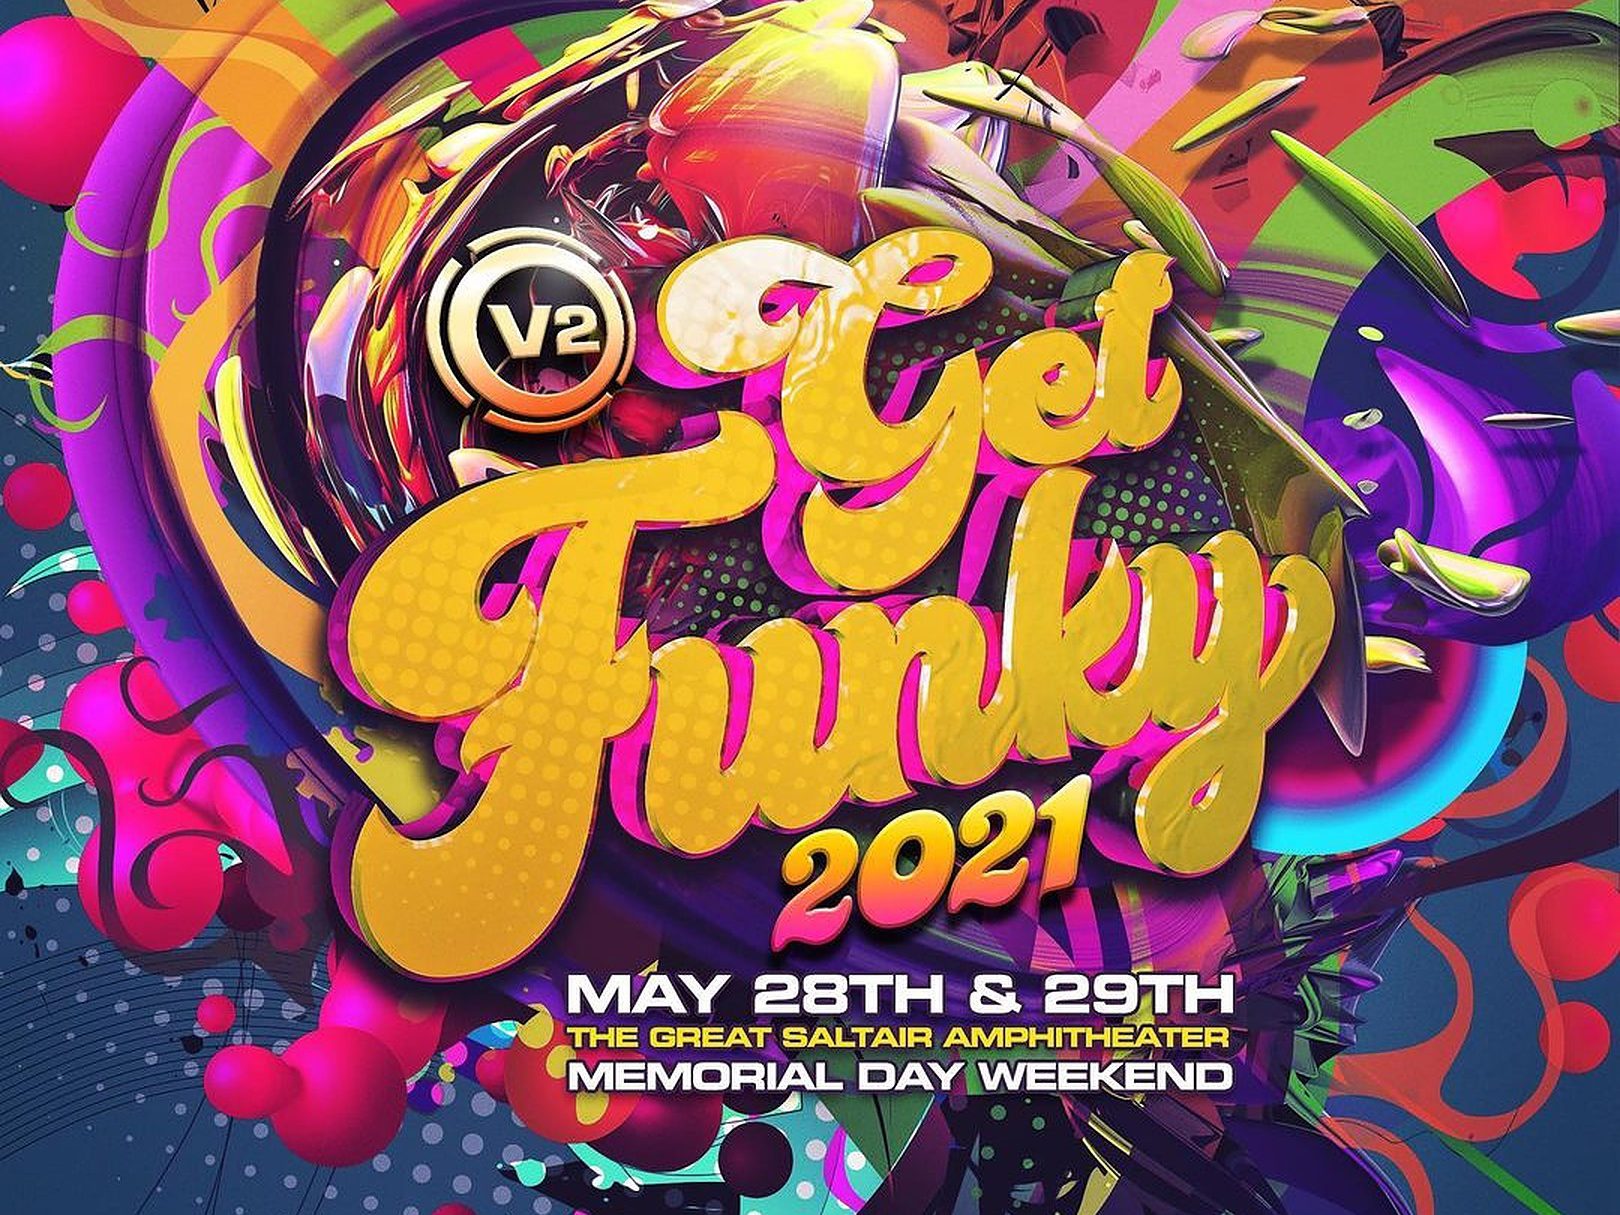 V2 Presents Get Funky 2021